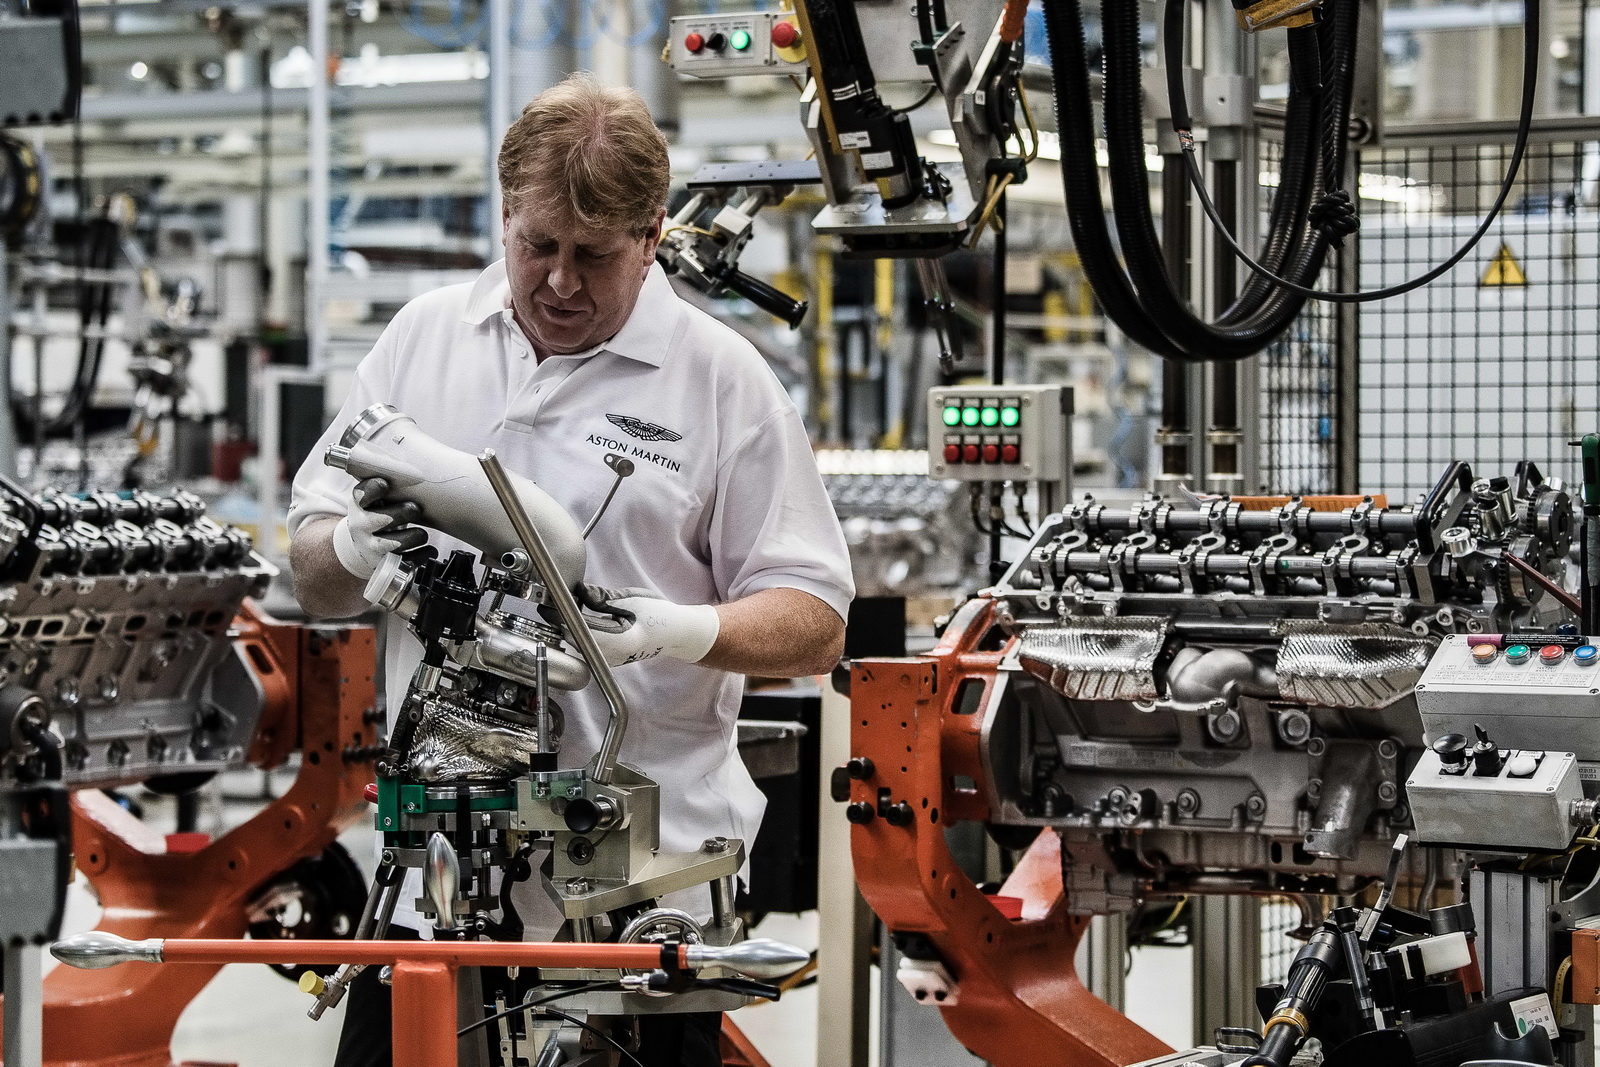 
Đến cuối tuần qua, hãng Aston Martin mới bắt tay vào chế tạo khối động cơ V12, tăng áp kép, dung tích 5,2 lít hoàn toàn mới của DB11 tại nhà máy ở Cologne, Đức.
